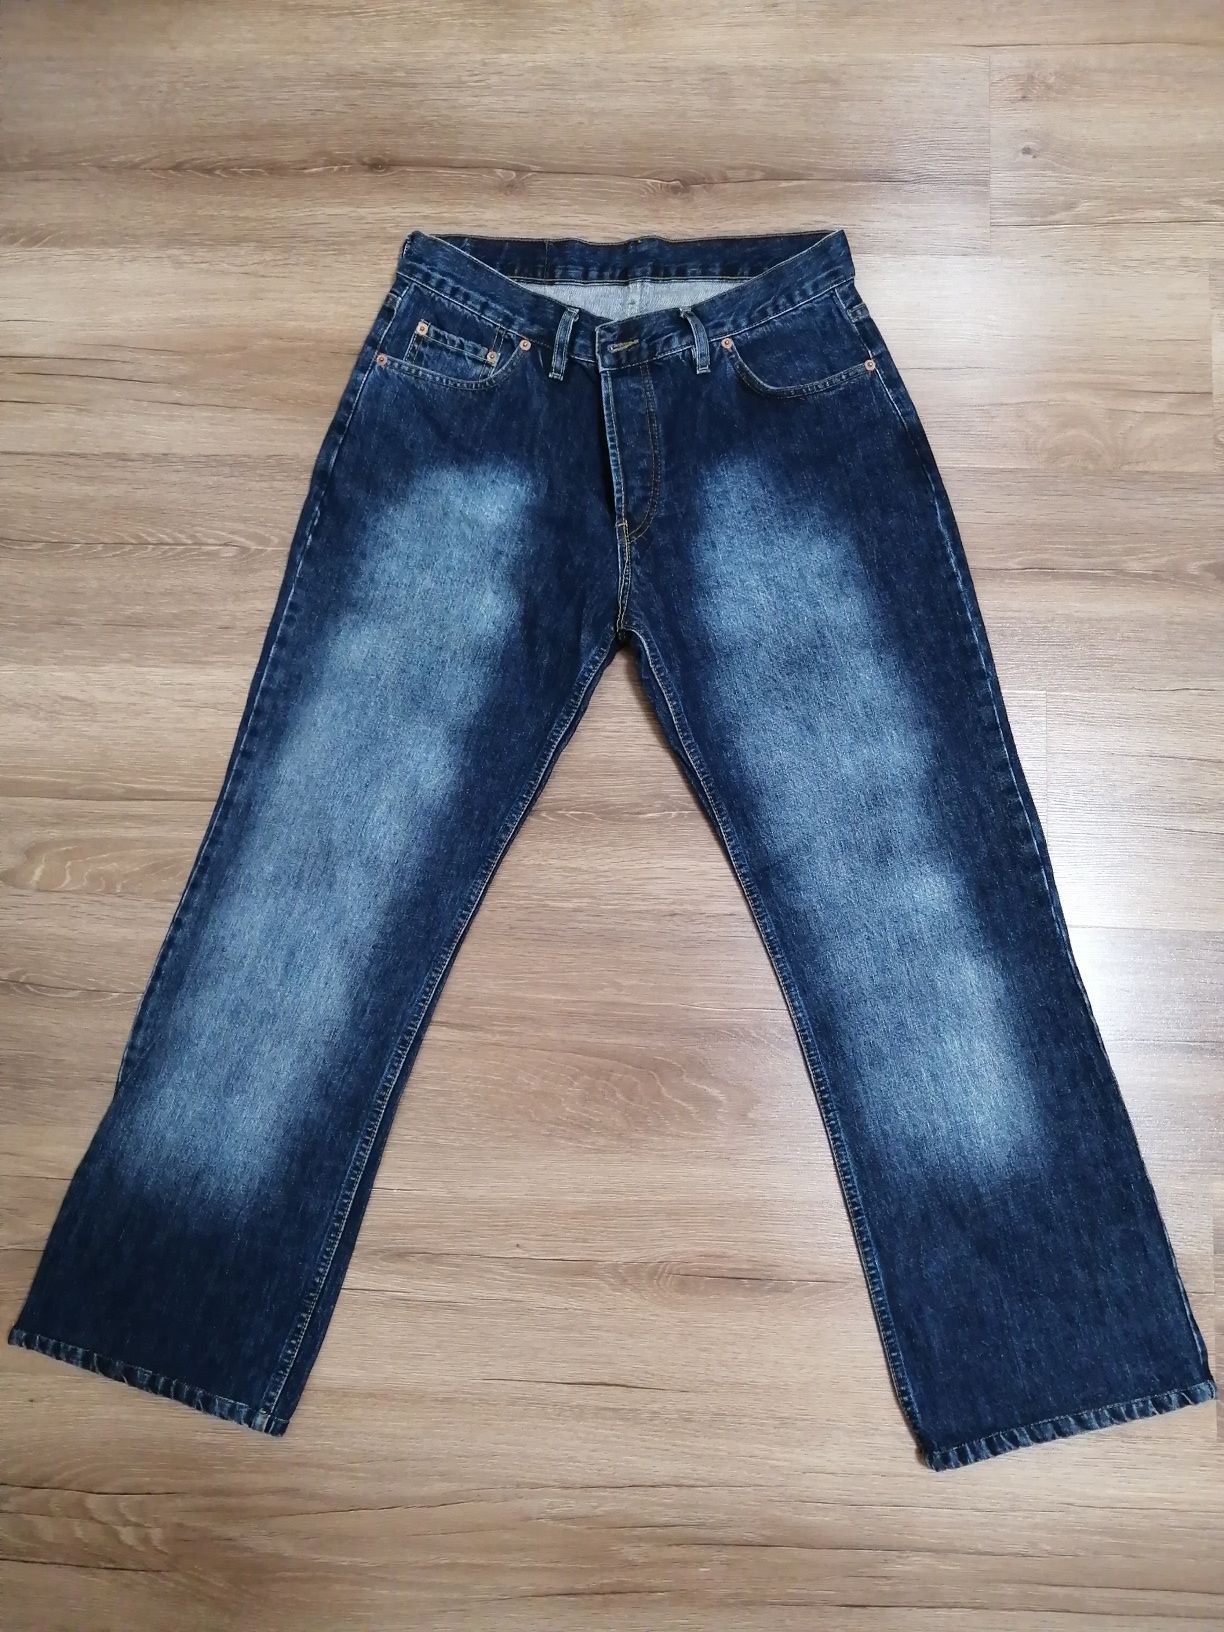 Фирменные джинсы Levis 501